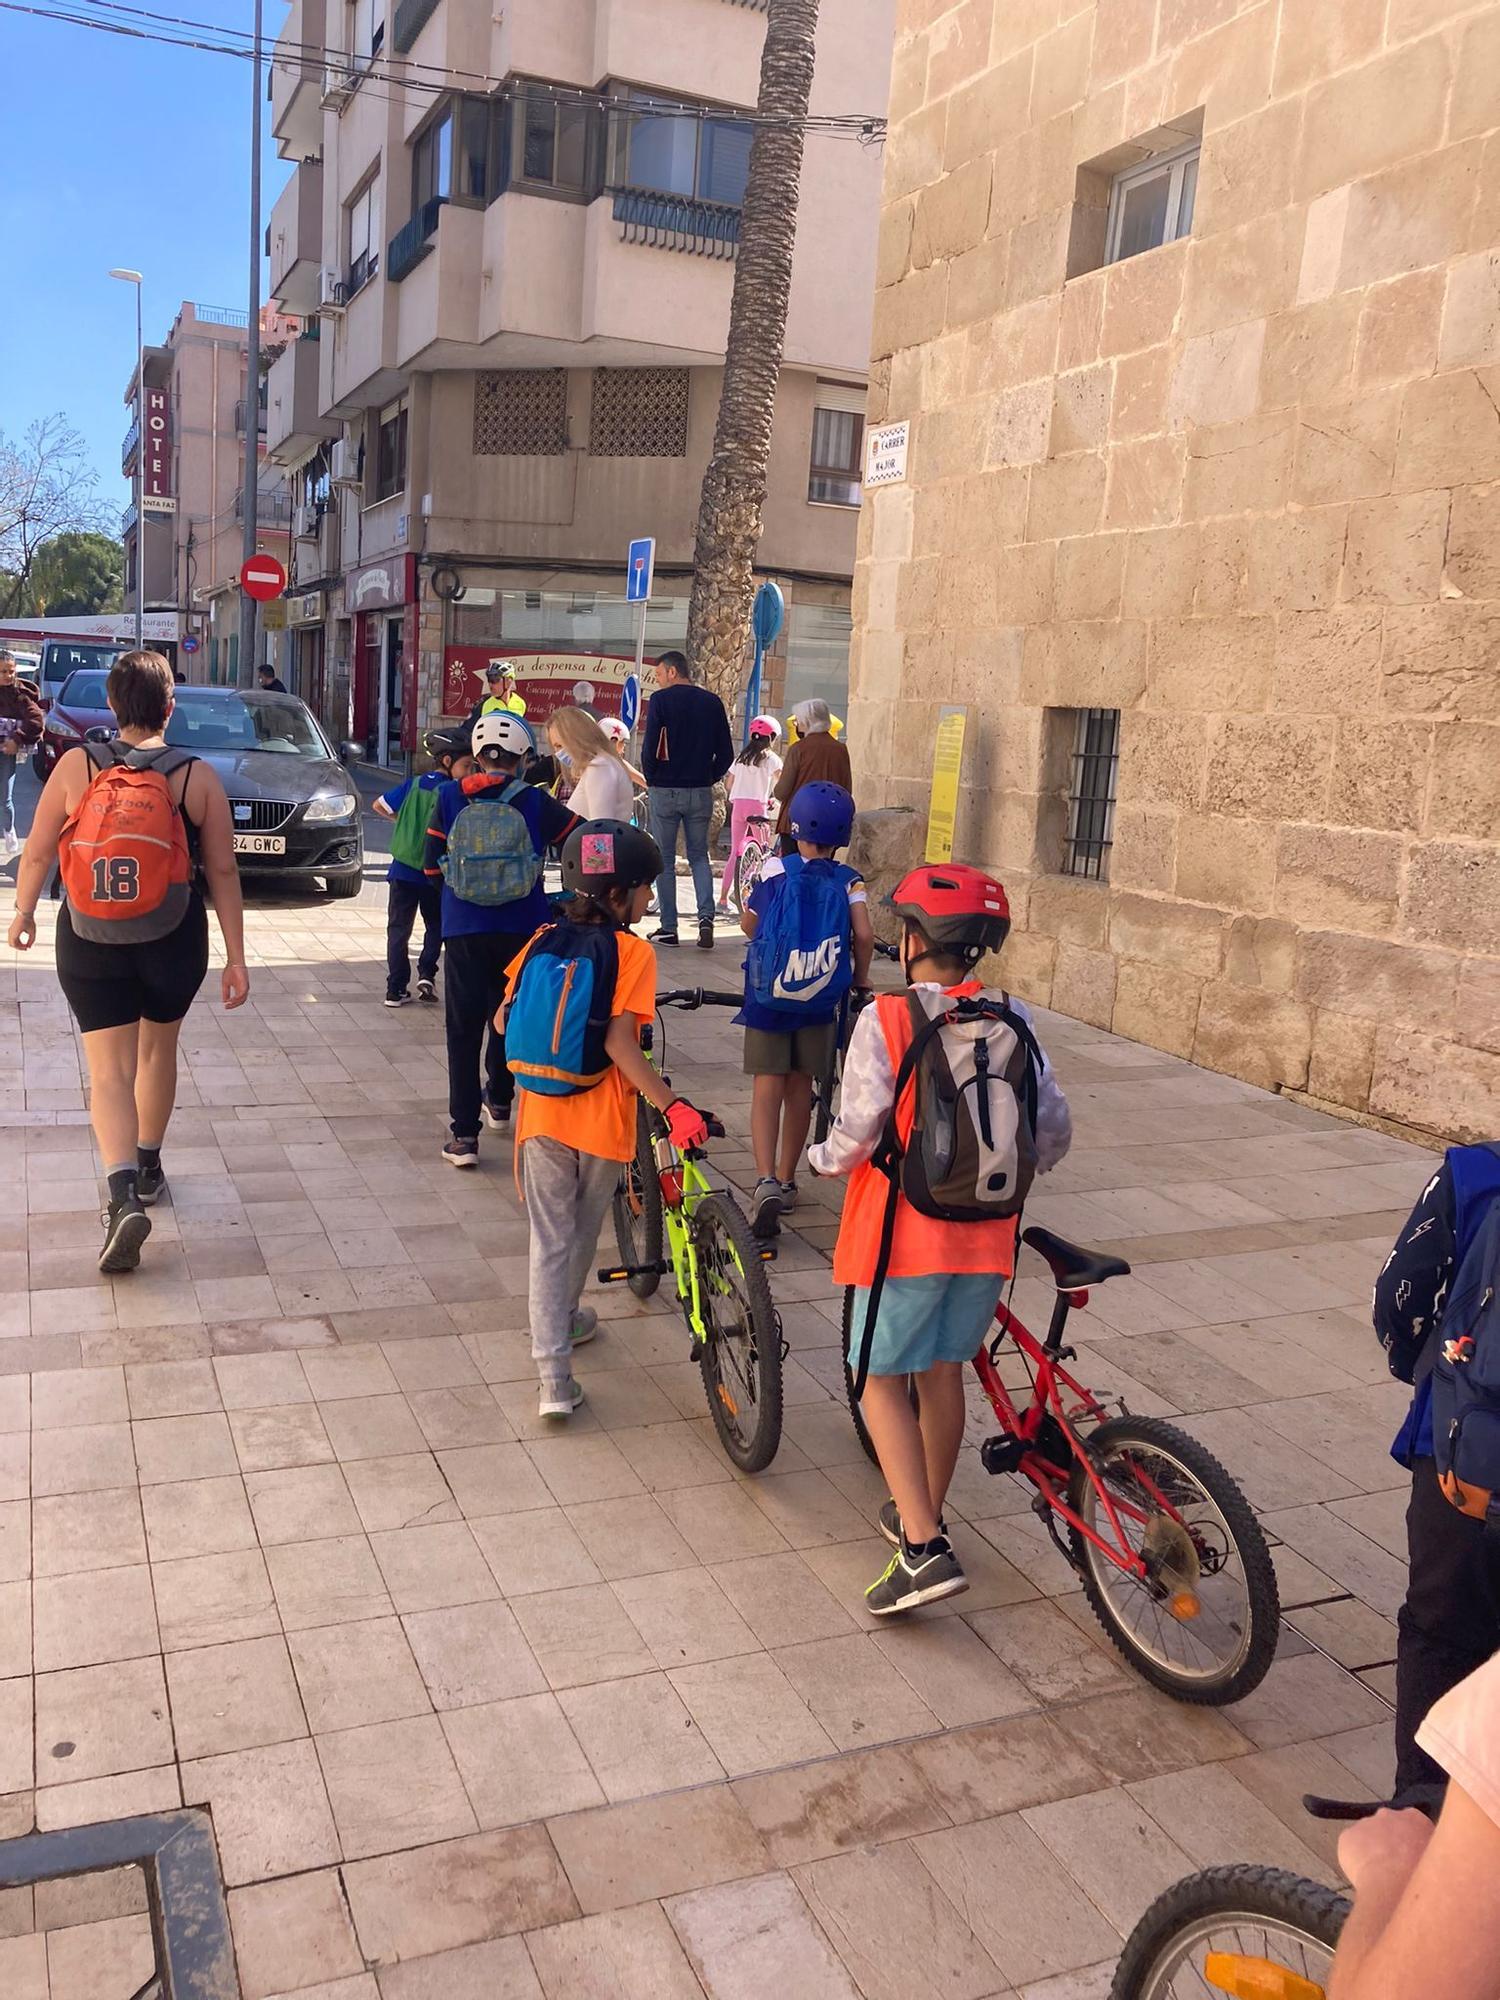 Los primeros escolares en visitar la Reliquia, en bicicleta, hoy